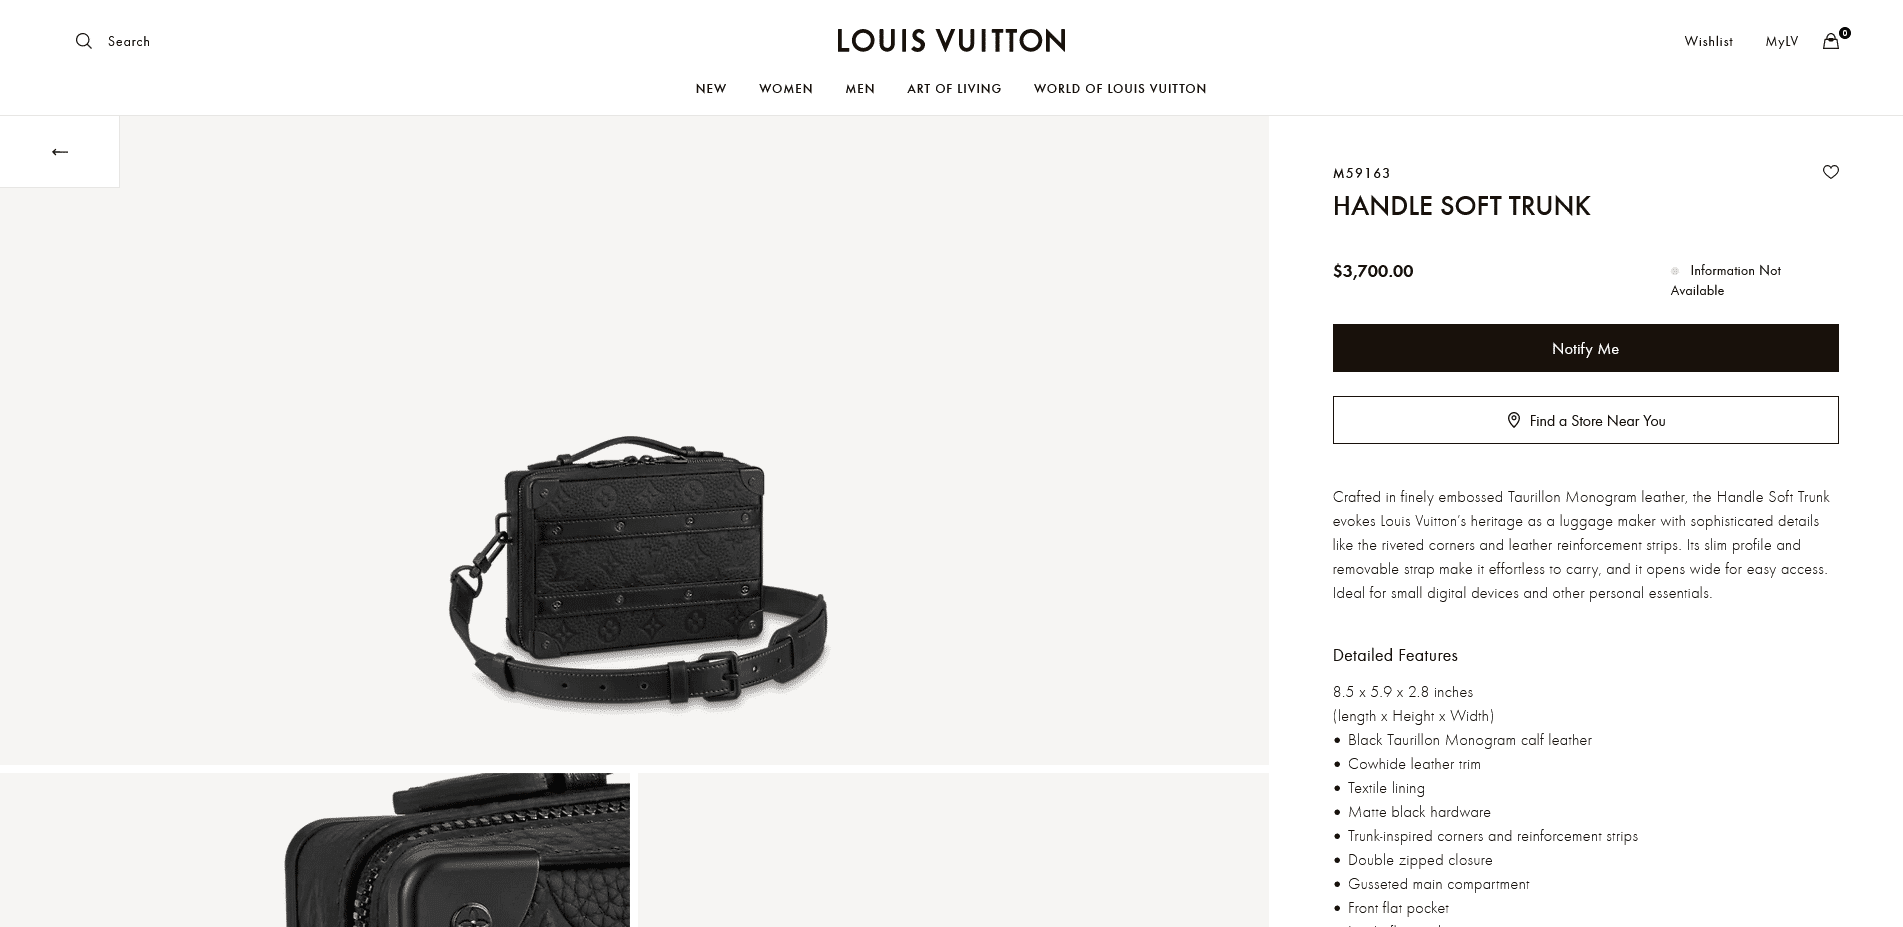 Shop Louis Vuitton Handle Soft Trunk (HANDLE SOFT TRUNK, M59163